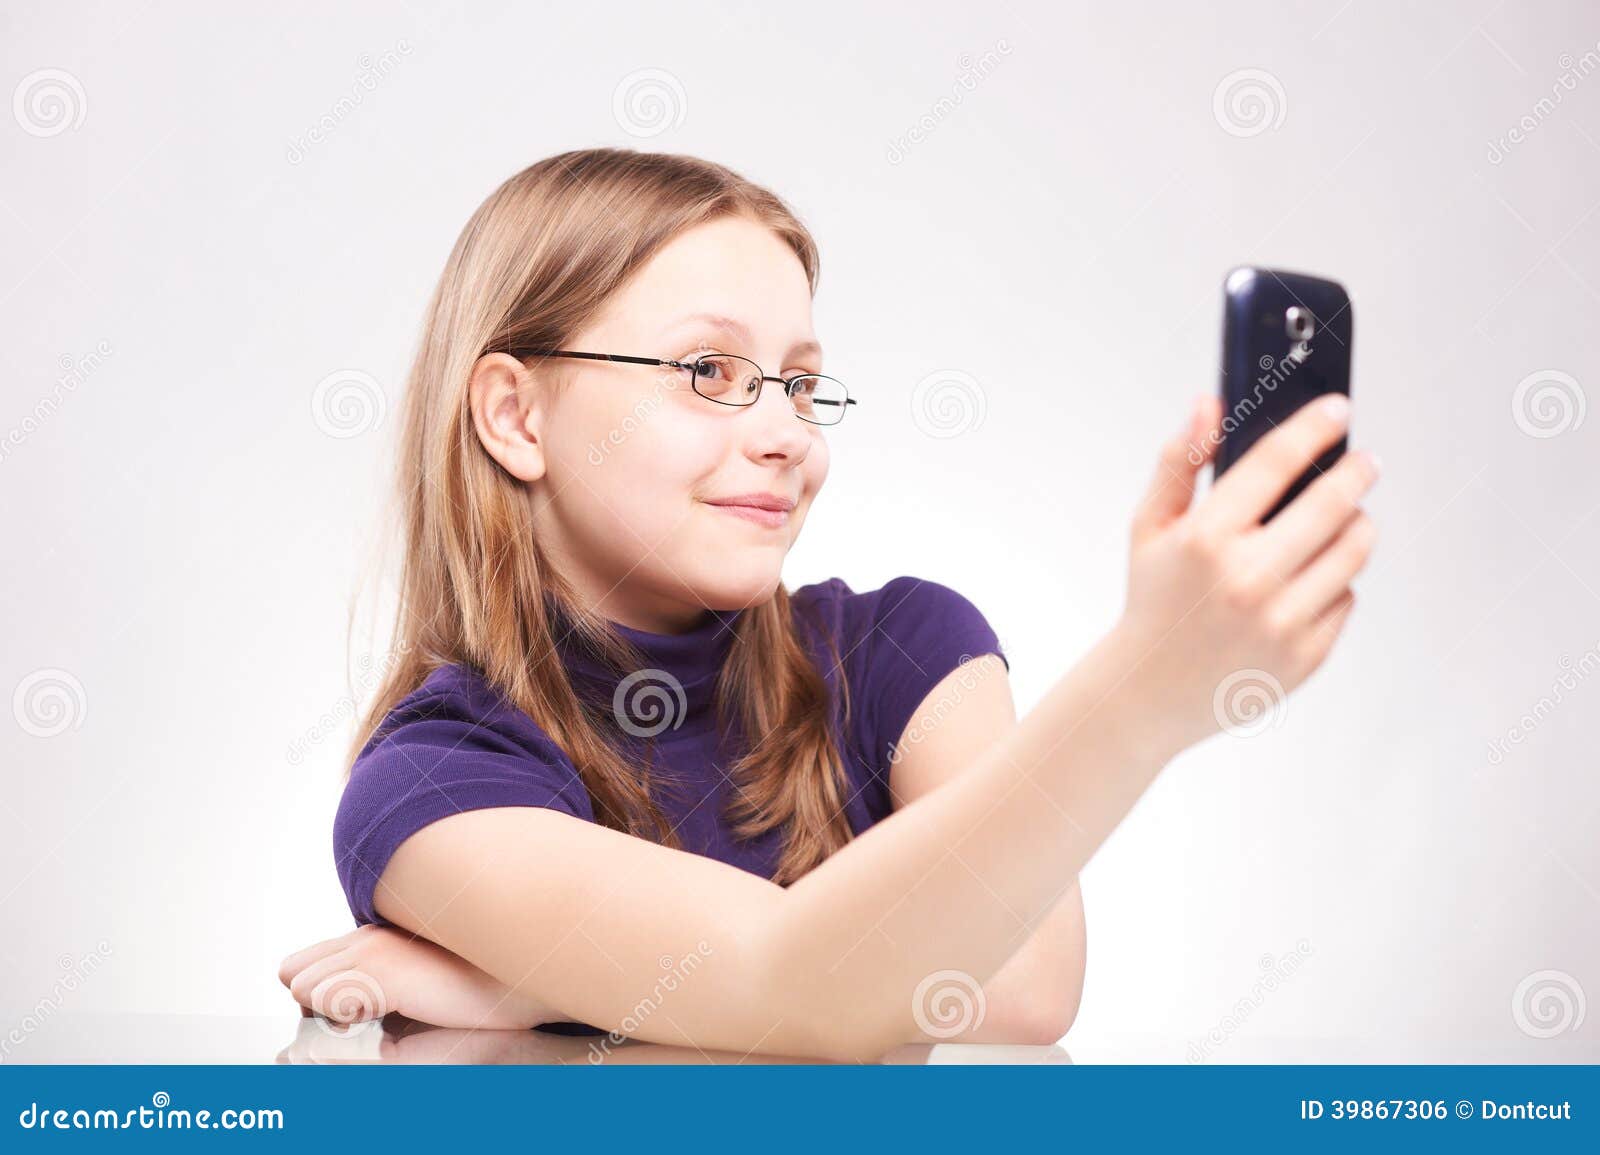 galleries adorable teen girl selfie sex photo